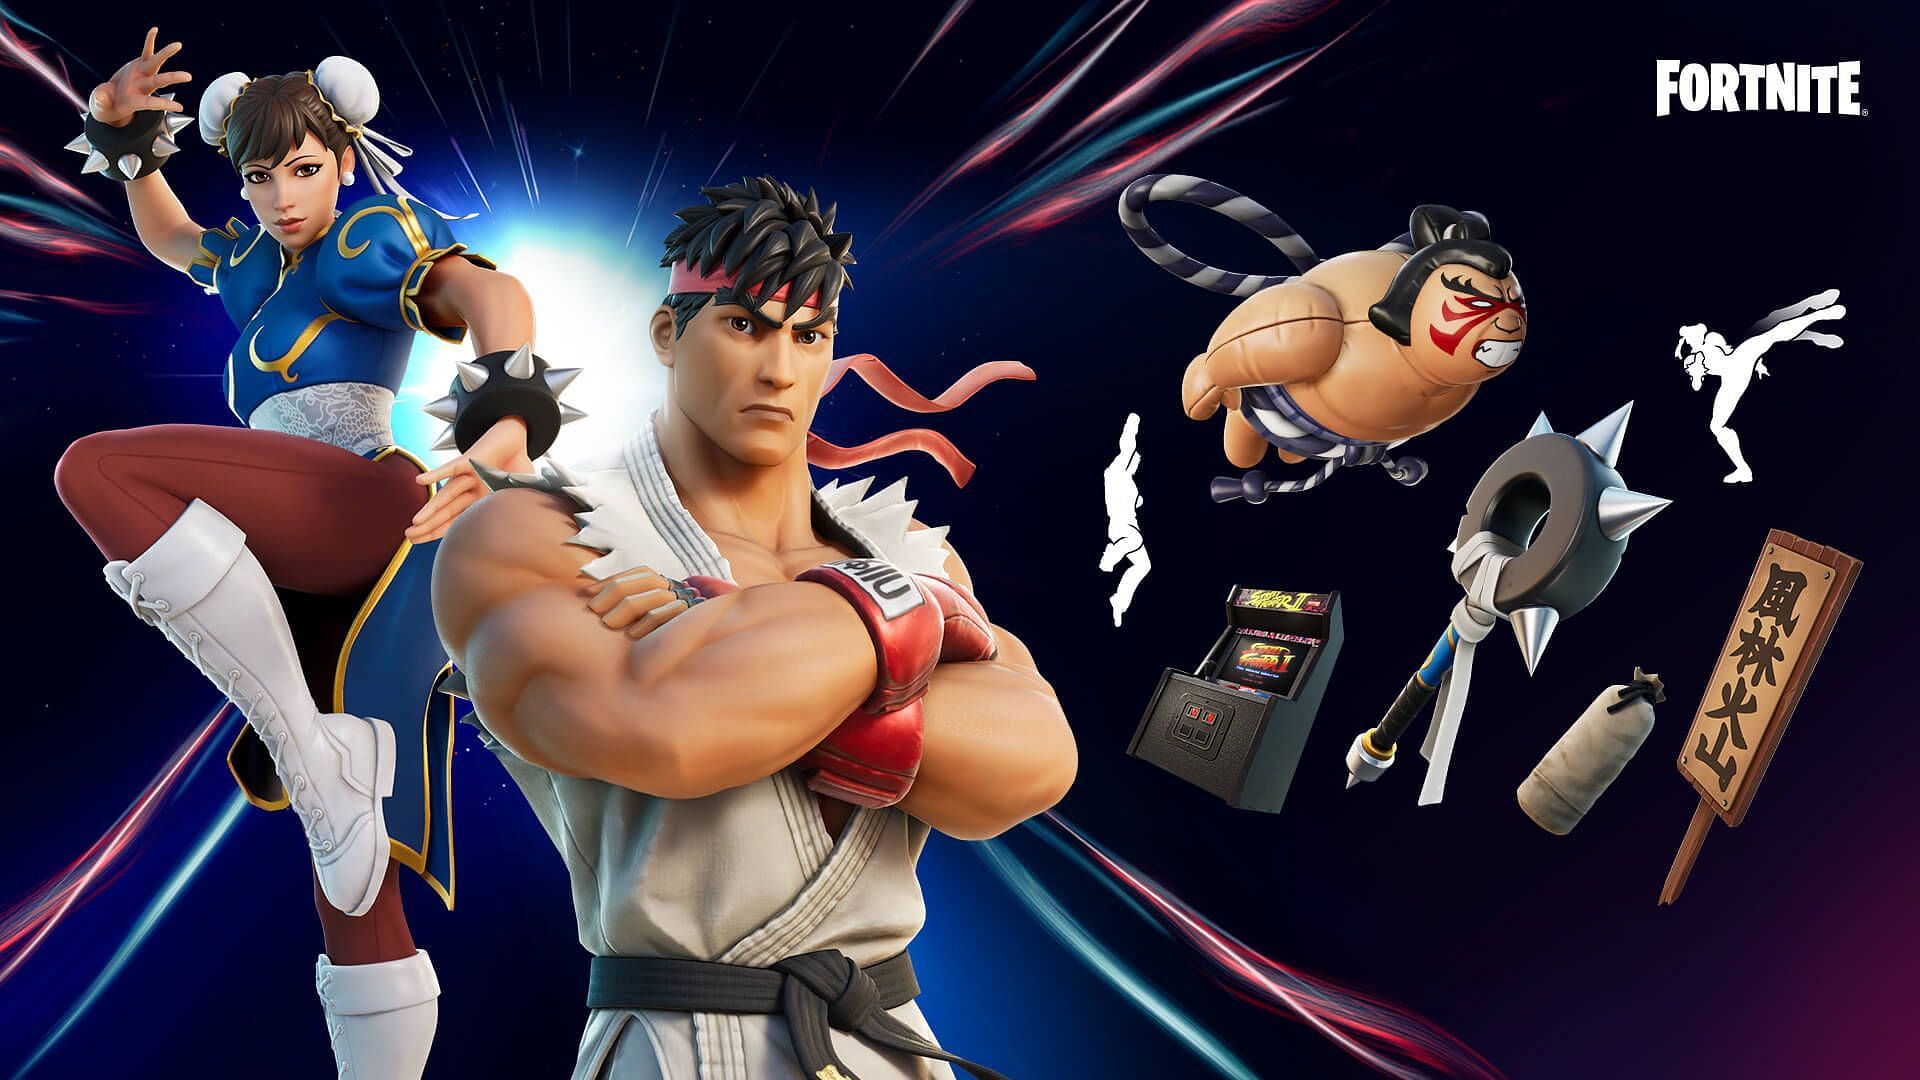 Ryu and Chun-Li Fortnite collab (Image via Epic Games)